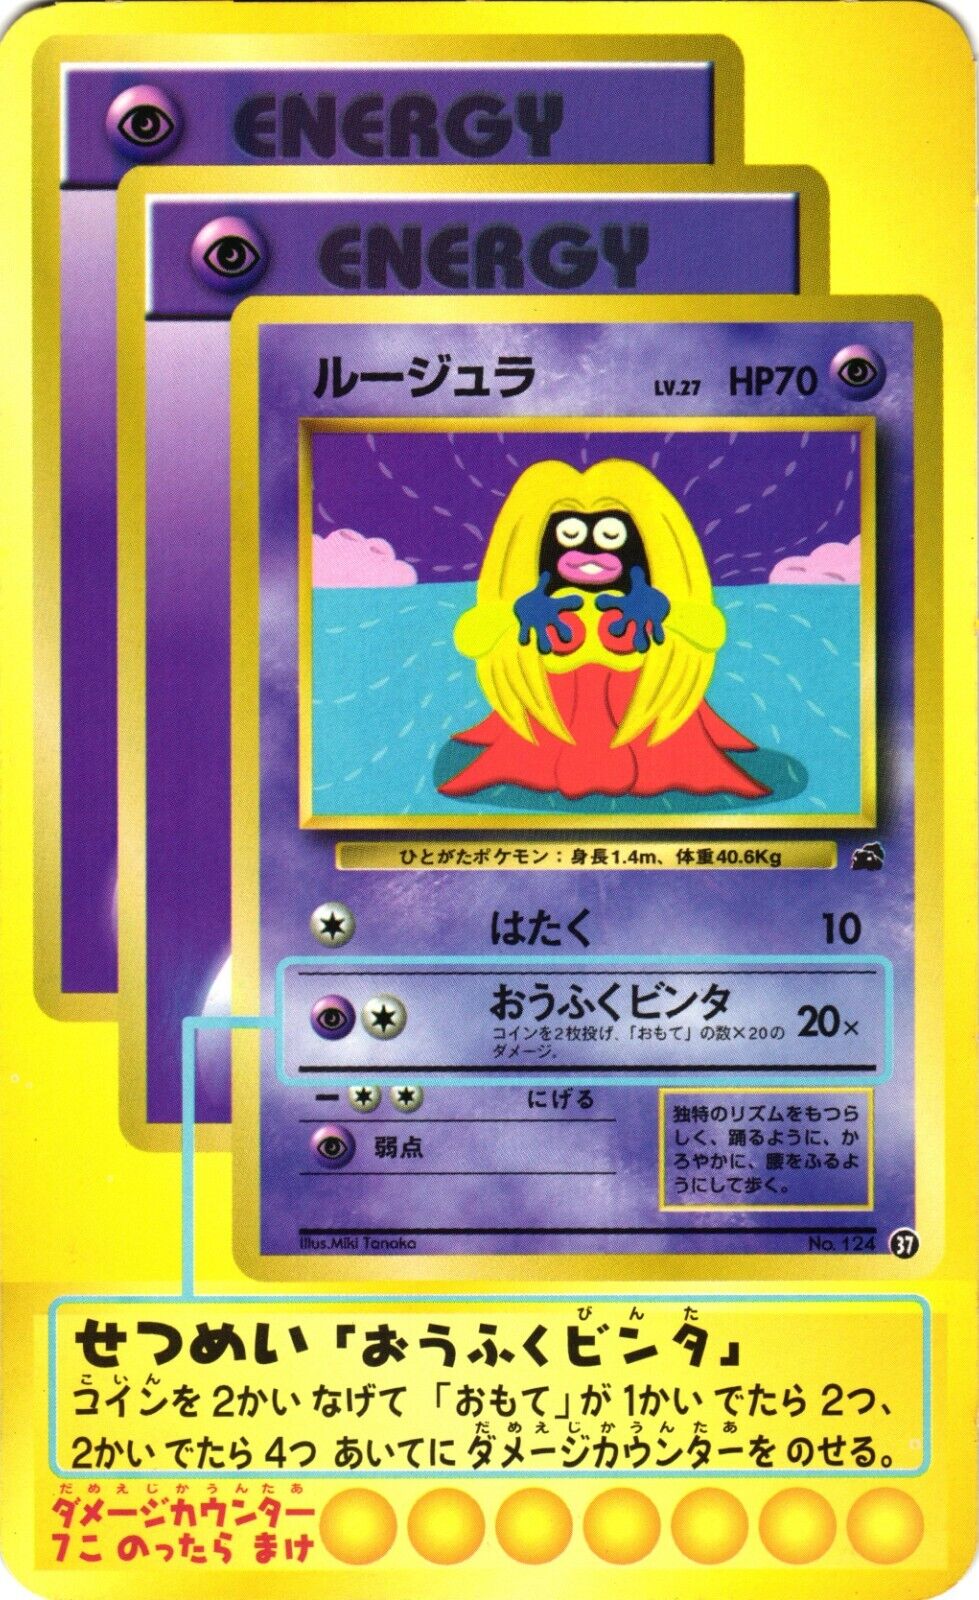 Jynx 2000 Pokémon Teach Jumbo Promotional Japanese Card Extremely Rare